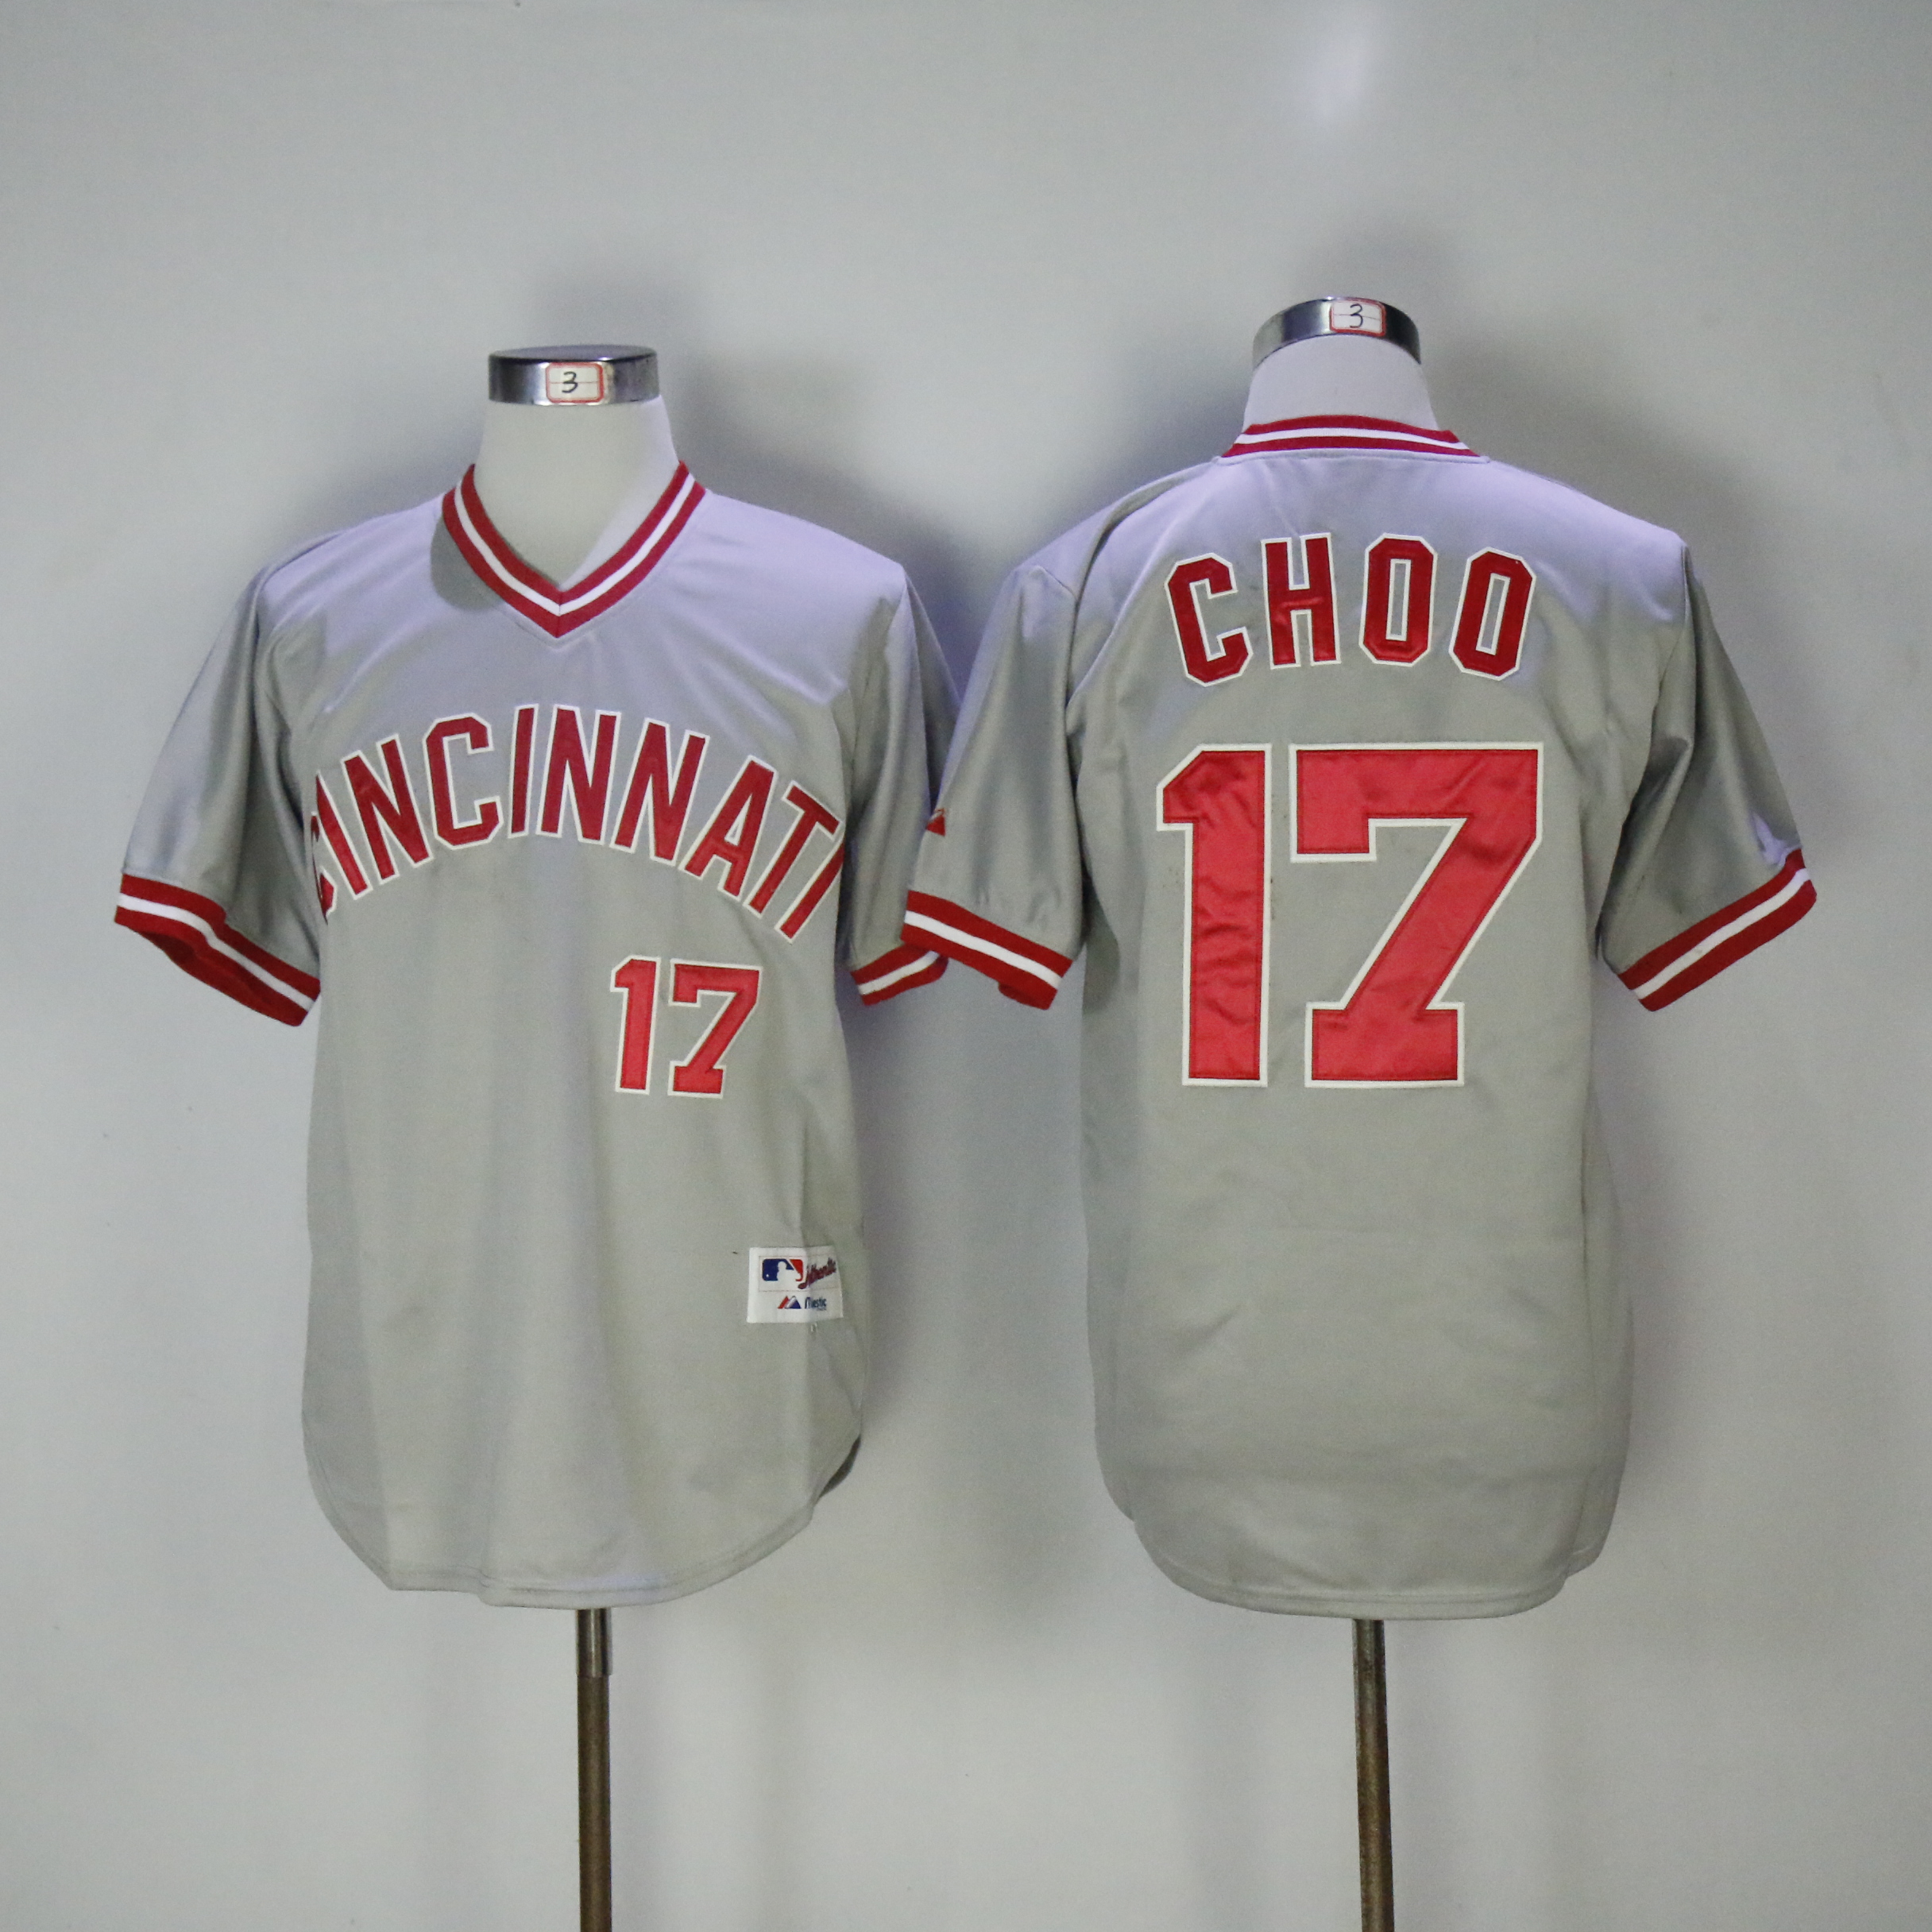 Men MLB Cincinnati Reds 17 Choo grey jerseys